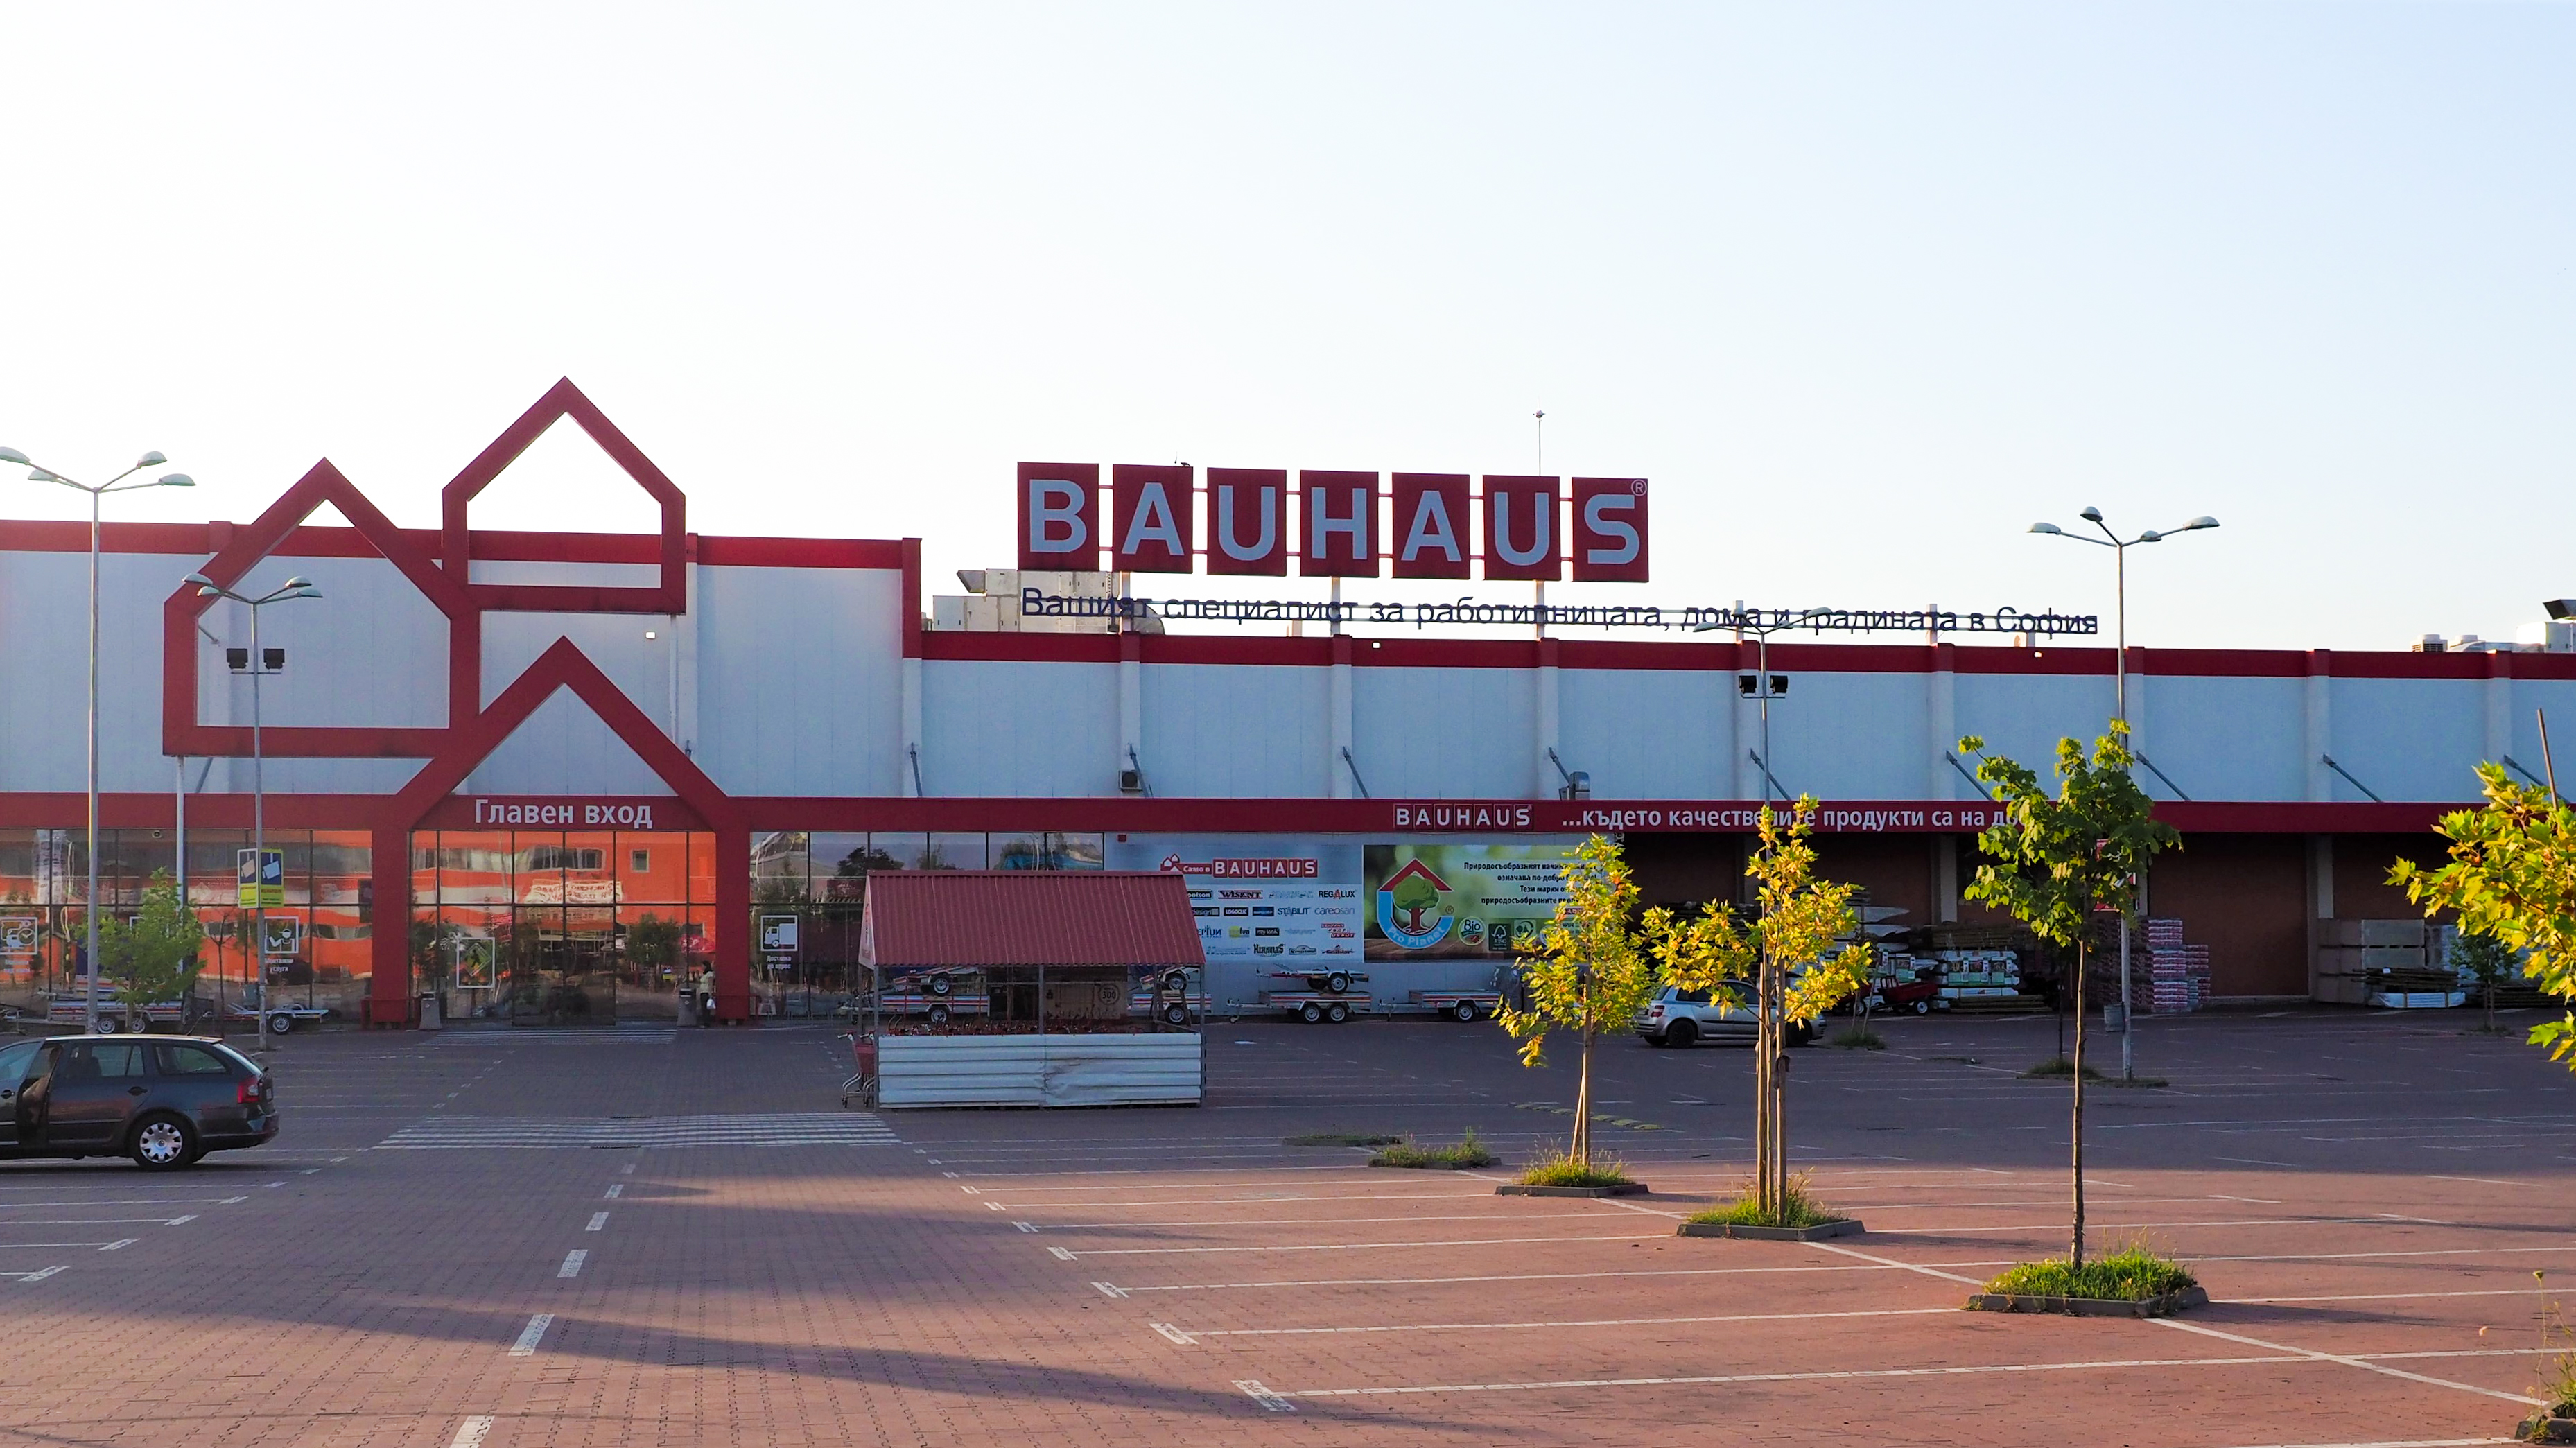 Bauhaus Hypermarket